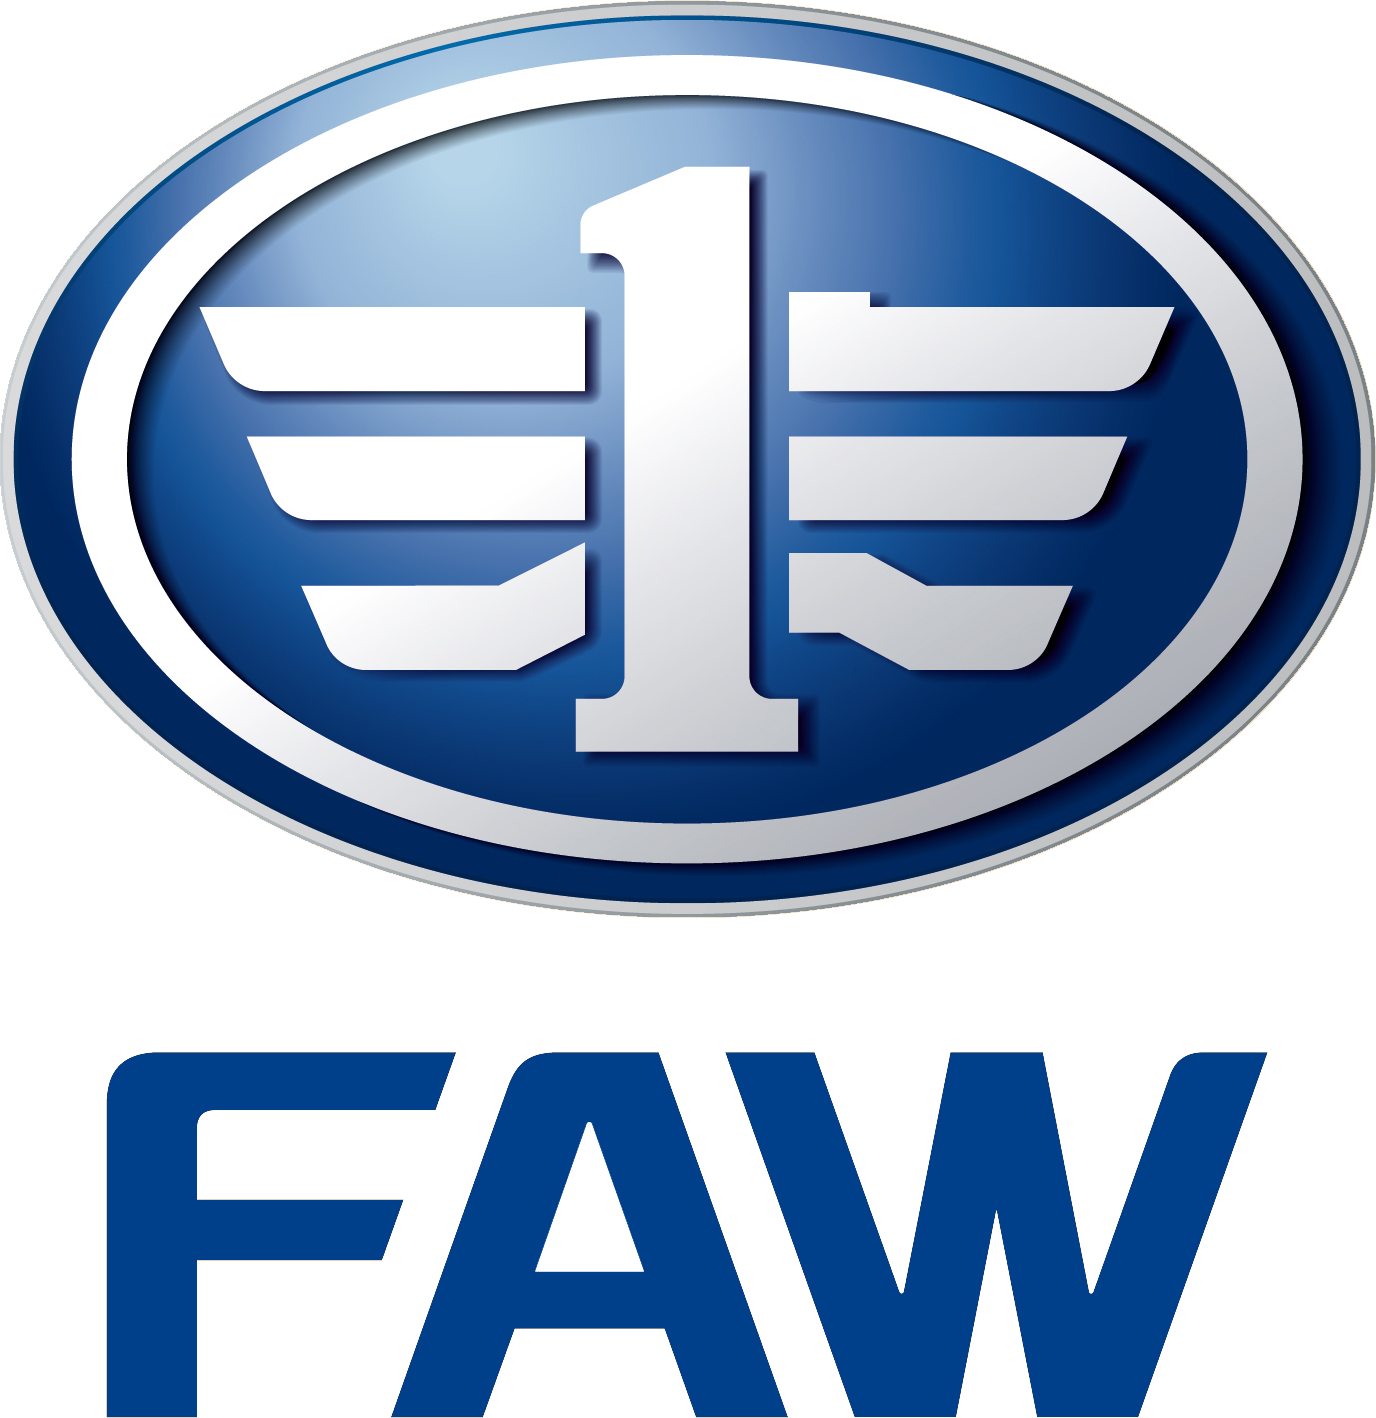 FAW Car logo large (transparent PNG)